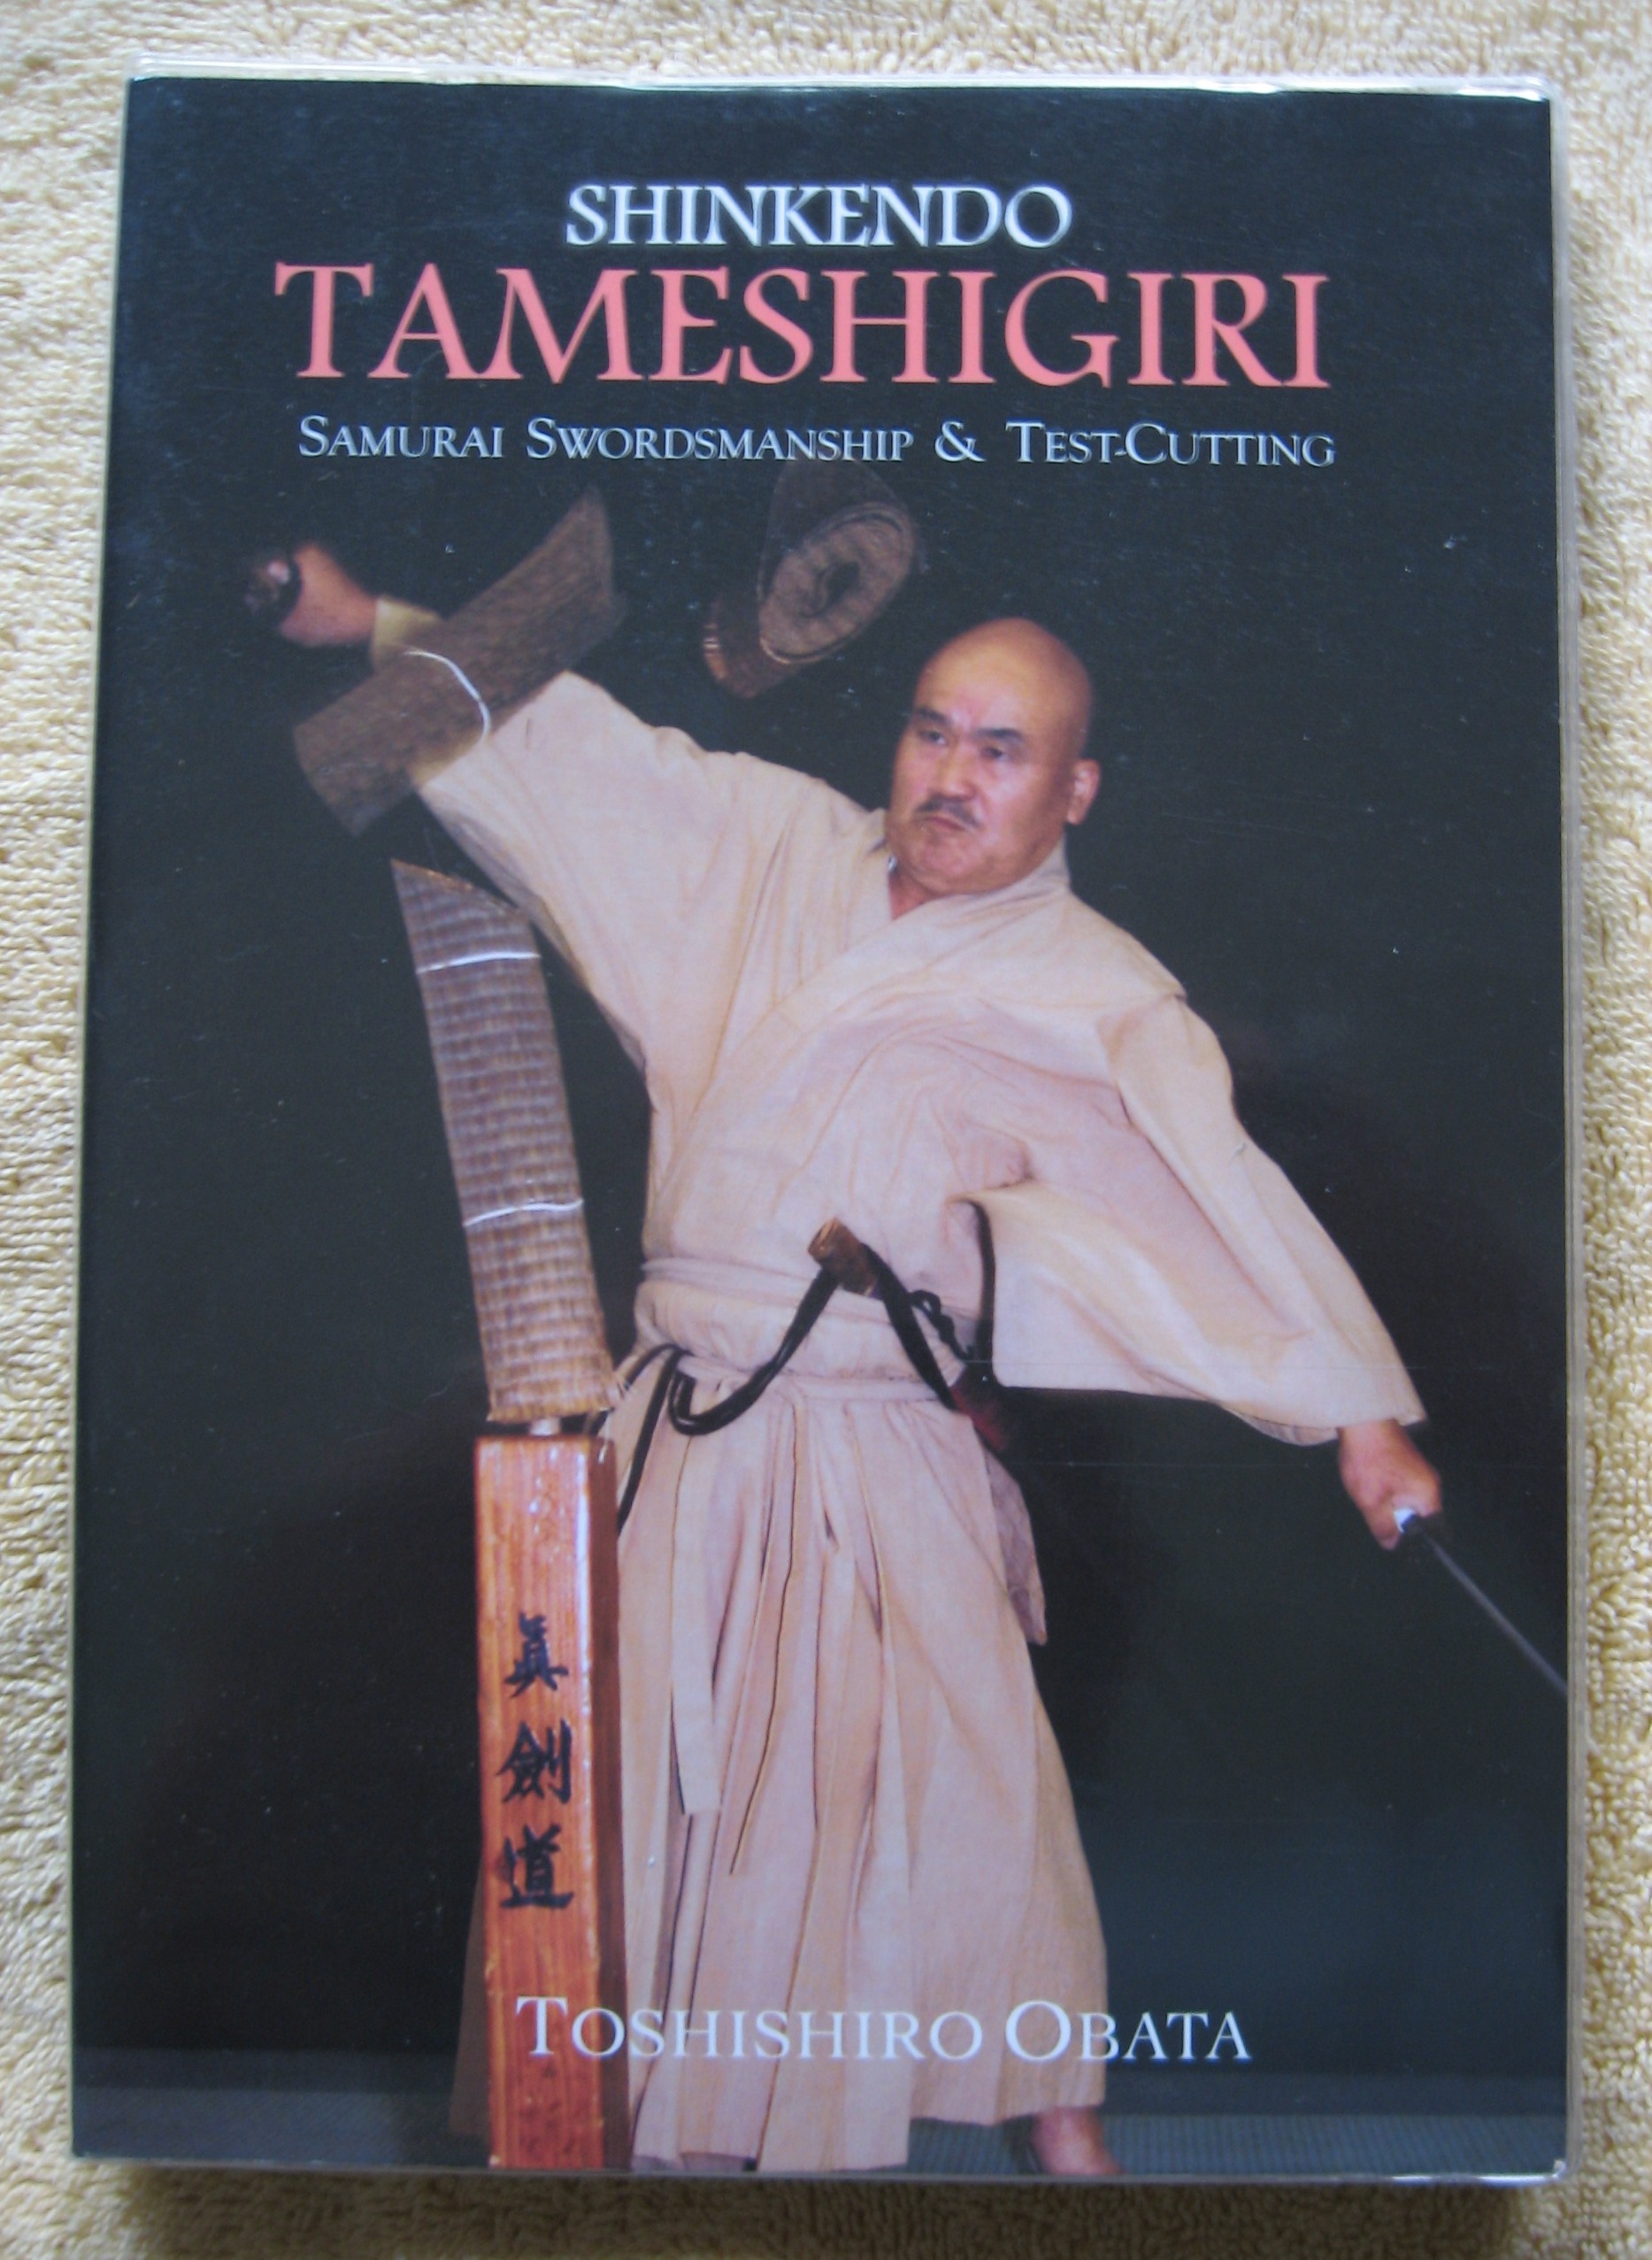 Shinkendo TAMESHIGIRI